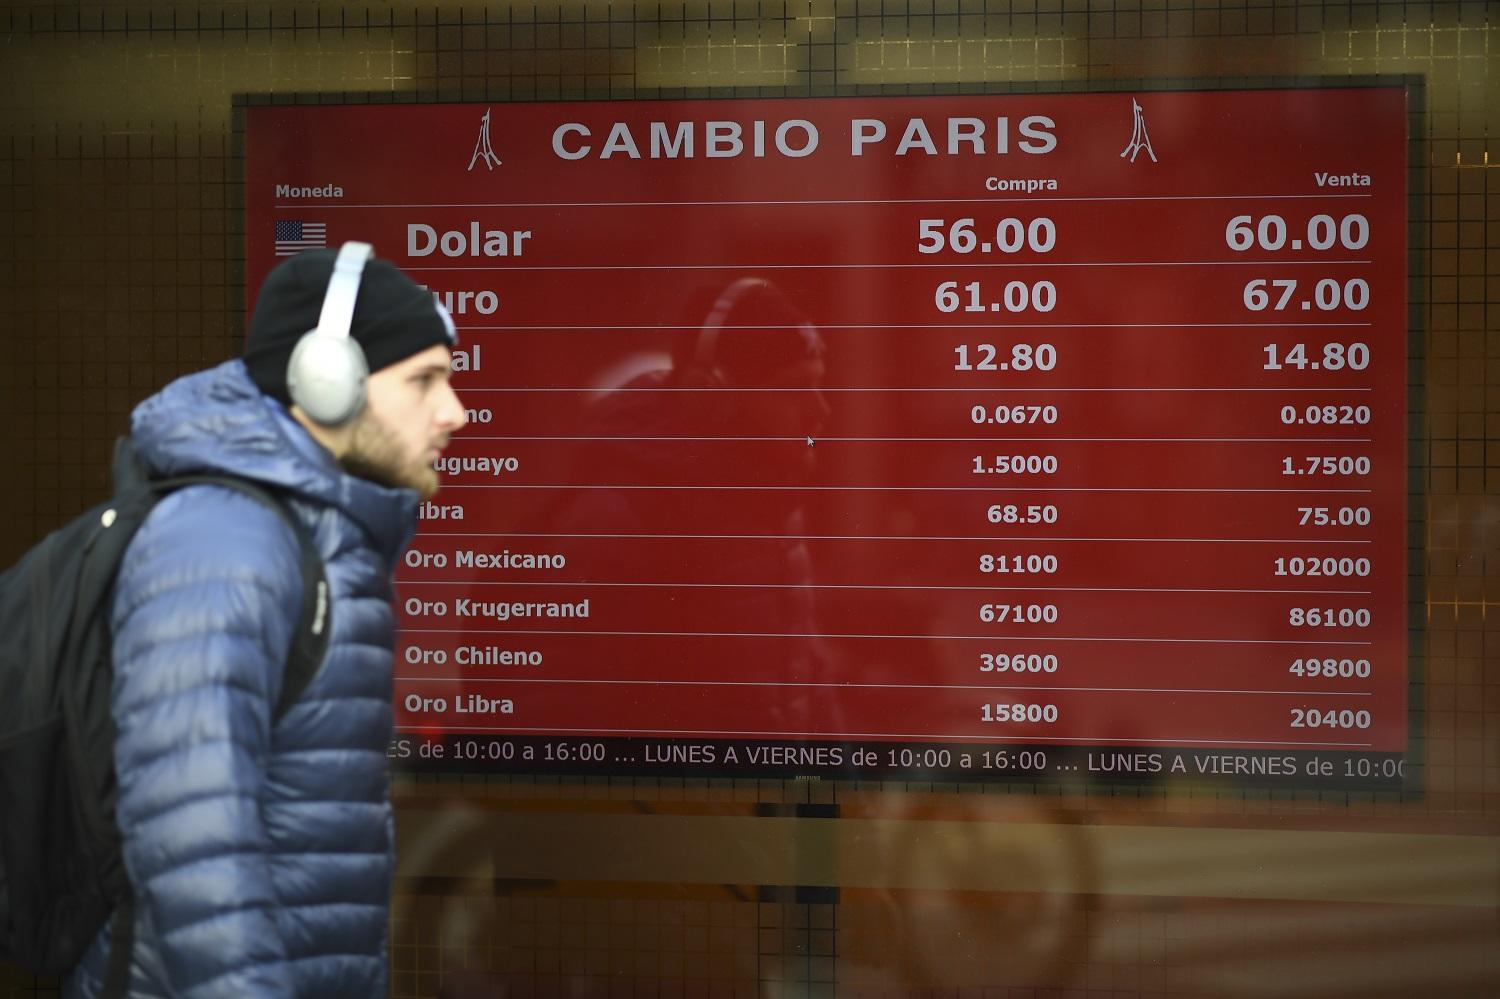 لوحة في العاصمة الأرجنتينية تظهر أسعار صرف العملة، 13 آب/أغسطس 2019. أ ف ب 